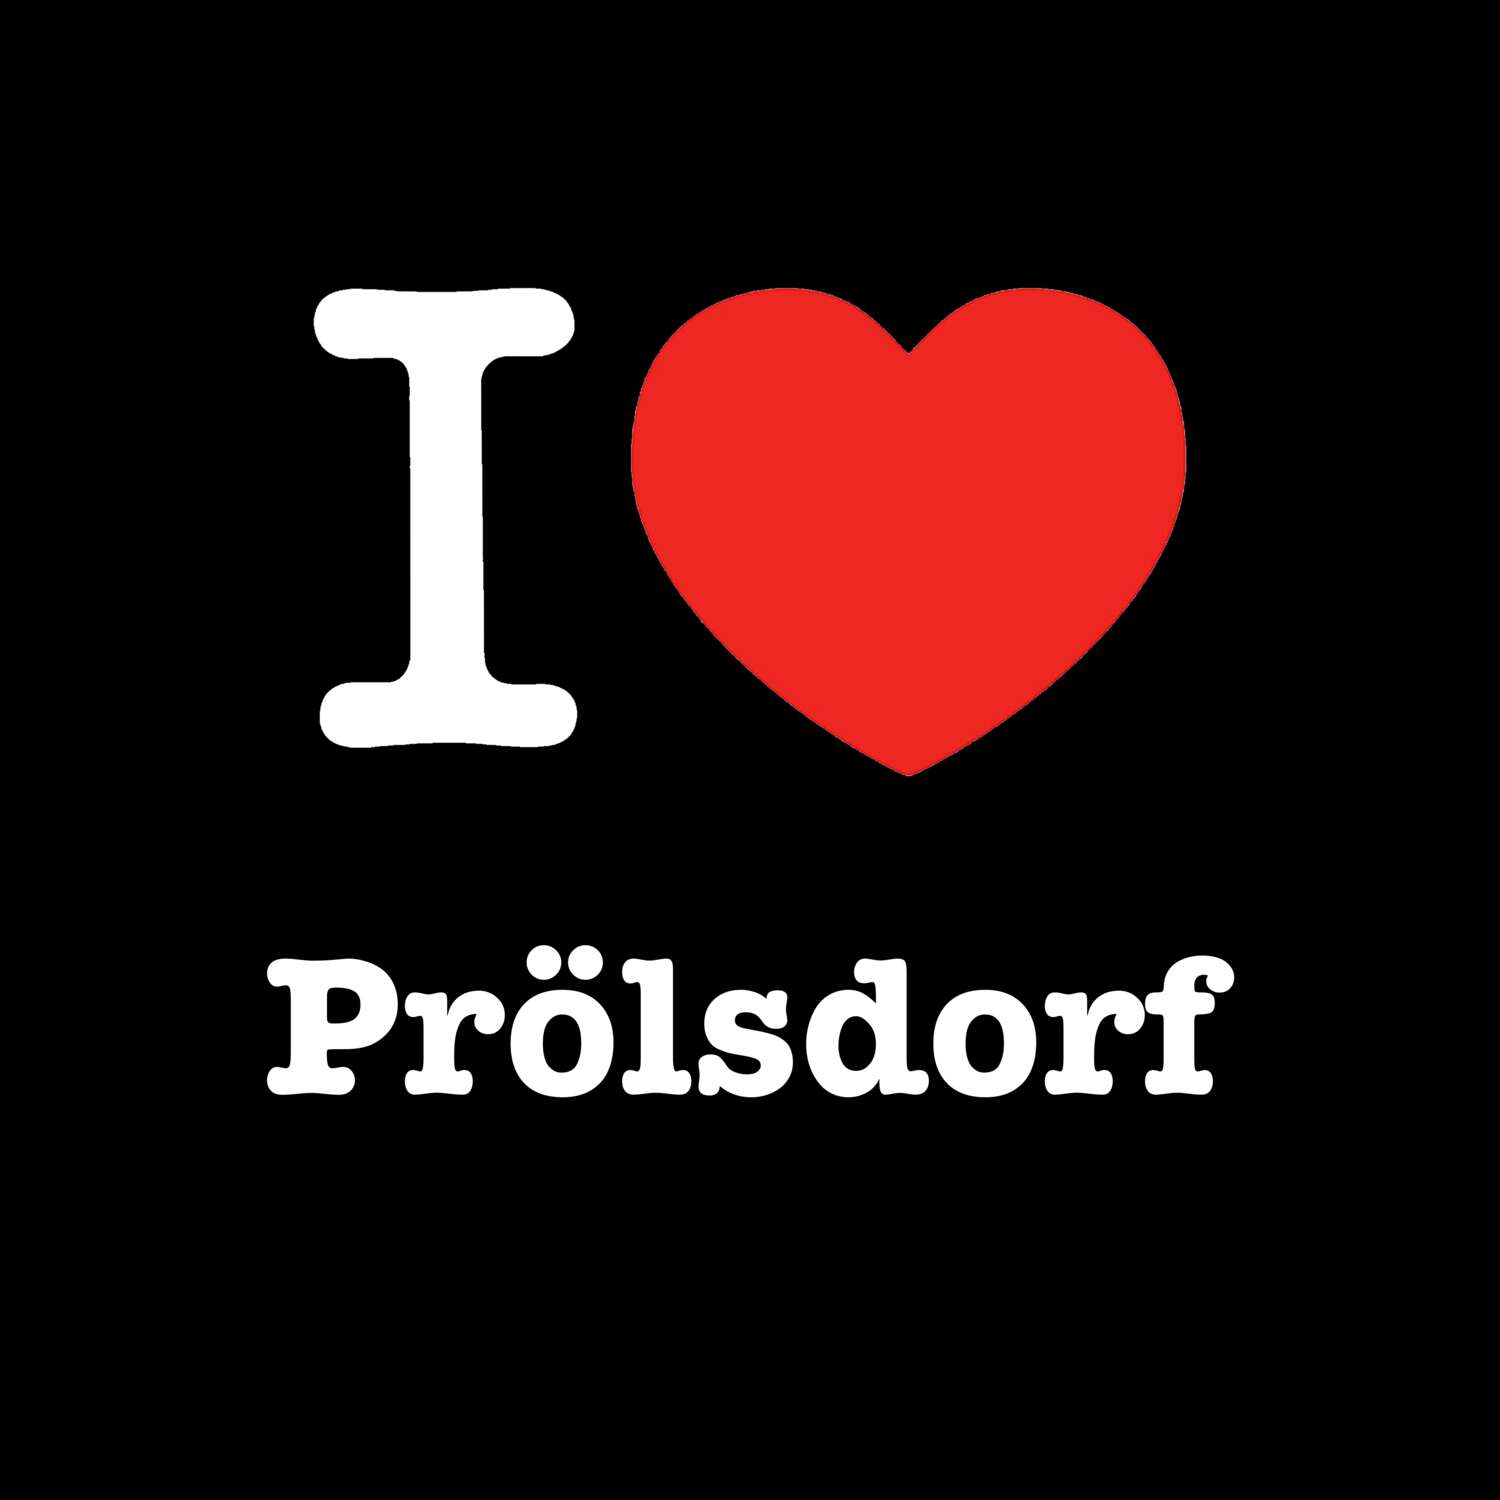 Prölsdorf T-Shirt »I love«